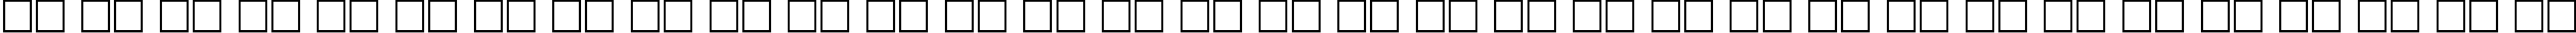 Пример написания русского алфавита шрифтом font194